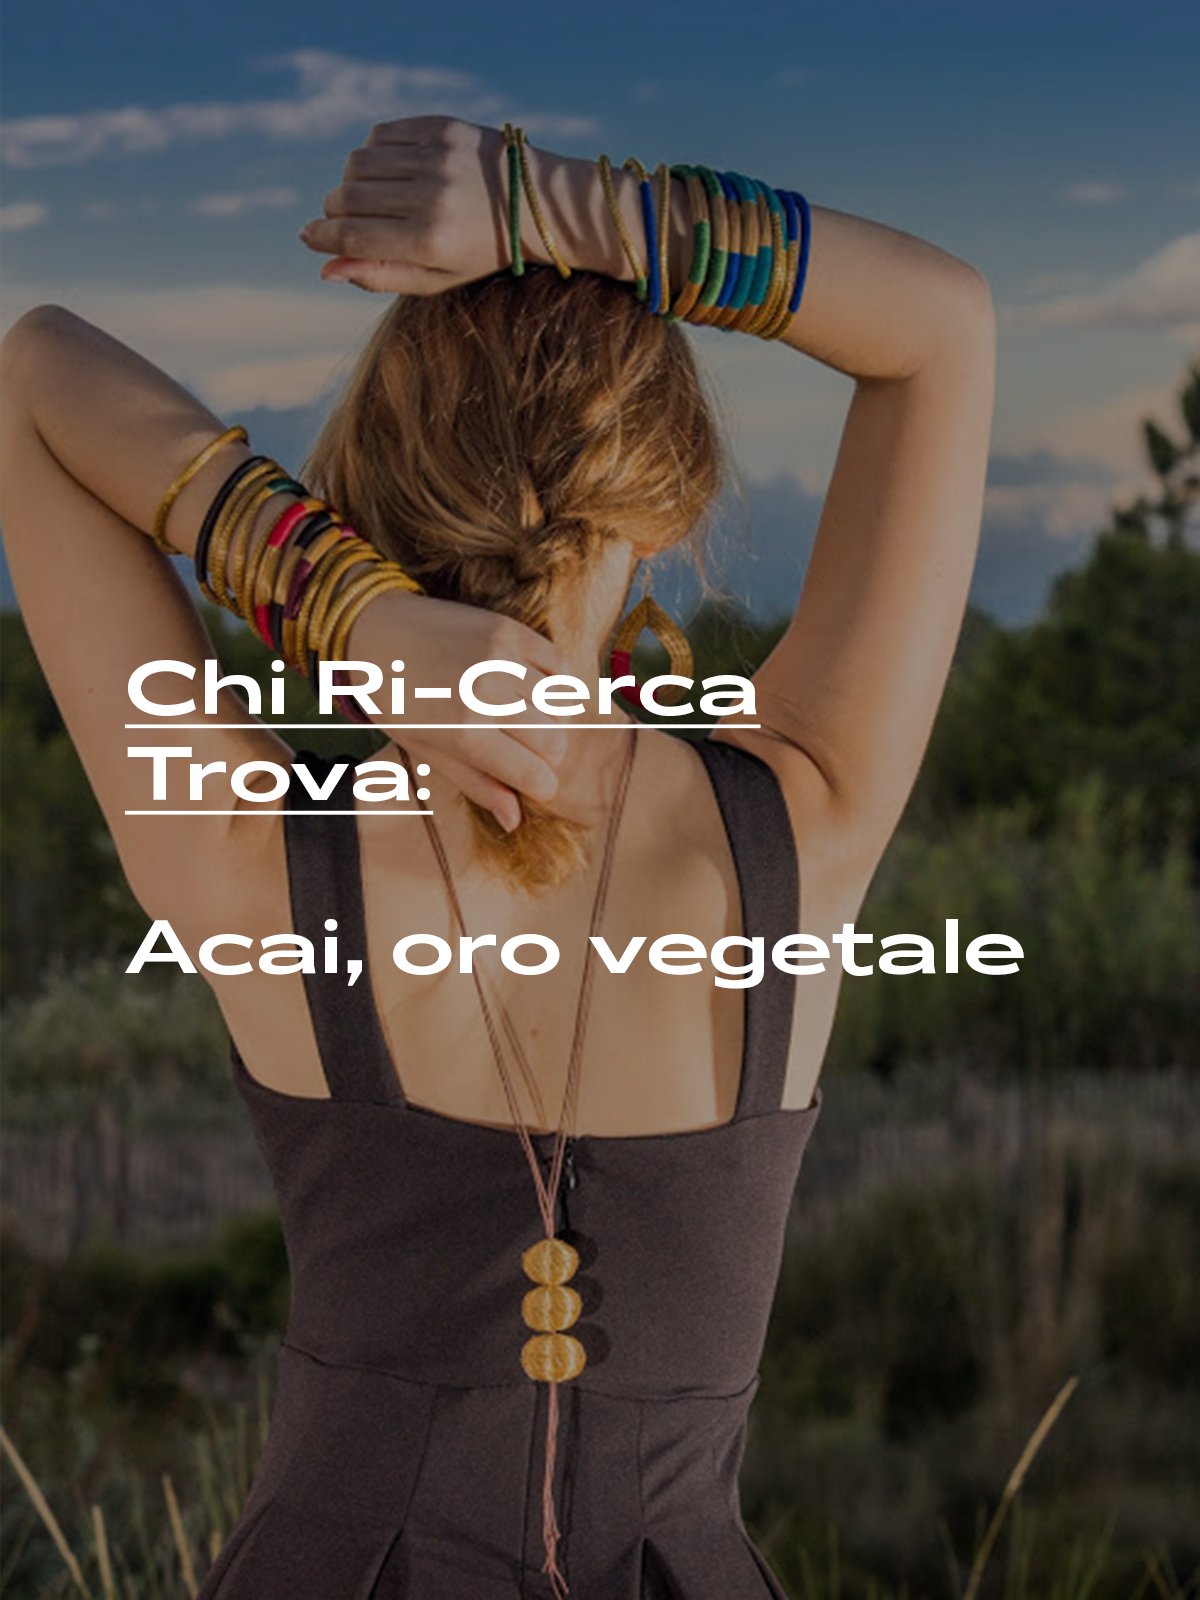 Chi Ri-Cerca Trova: Vegetable gold, the 